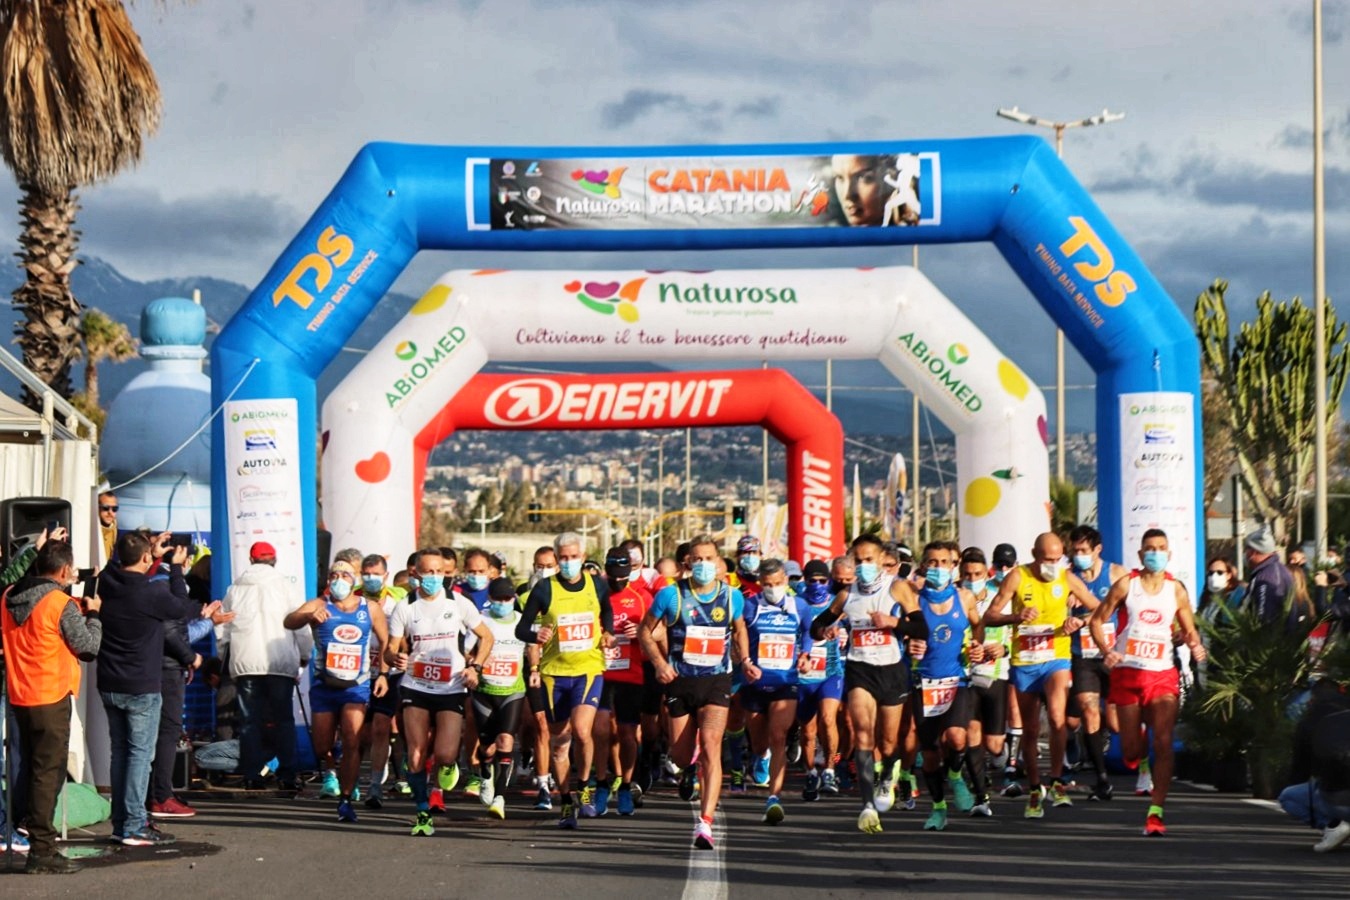 Tutto pronto per la Naturosa Catania Marathon 2022: manca solo lo start